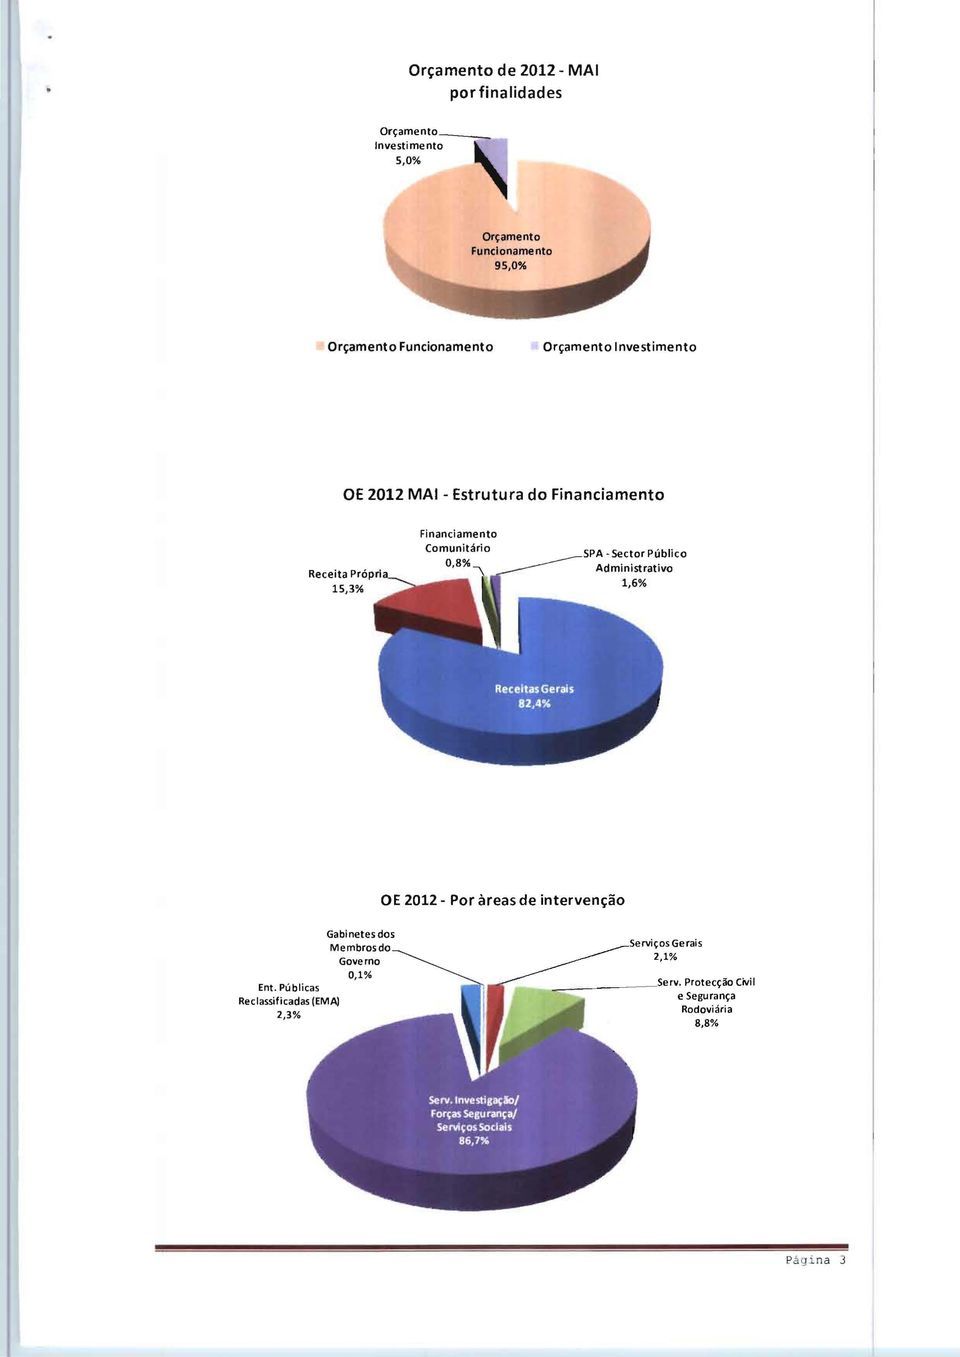 Receita Administrativo 1,6% OE 2012 - Por àreas de intervenção Gabinetes dos Membrosdo Governo 0,1% Ent.